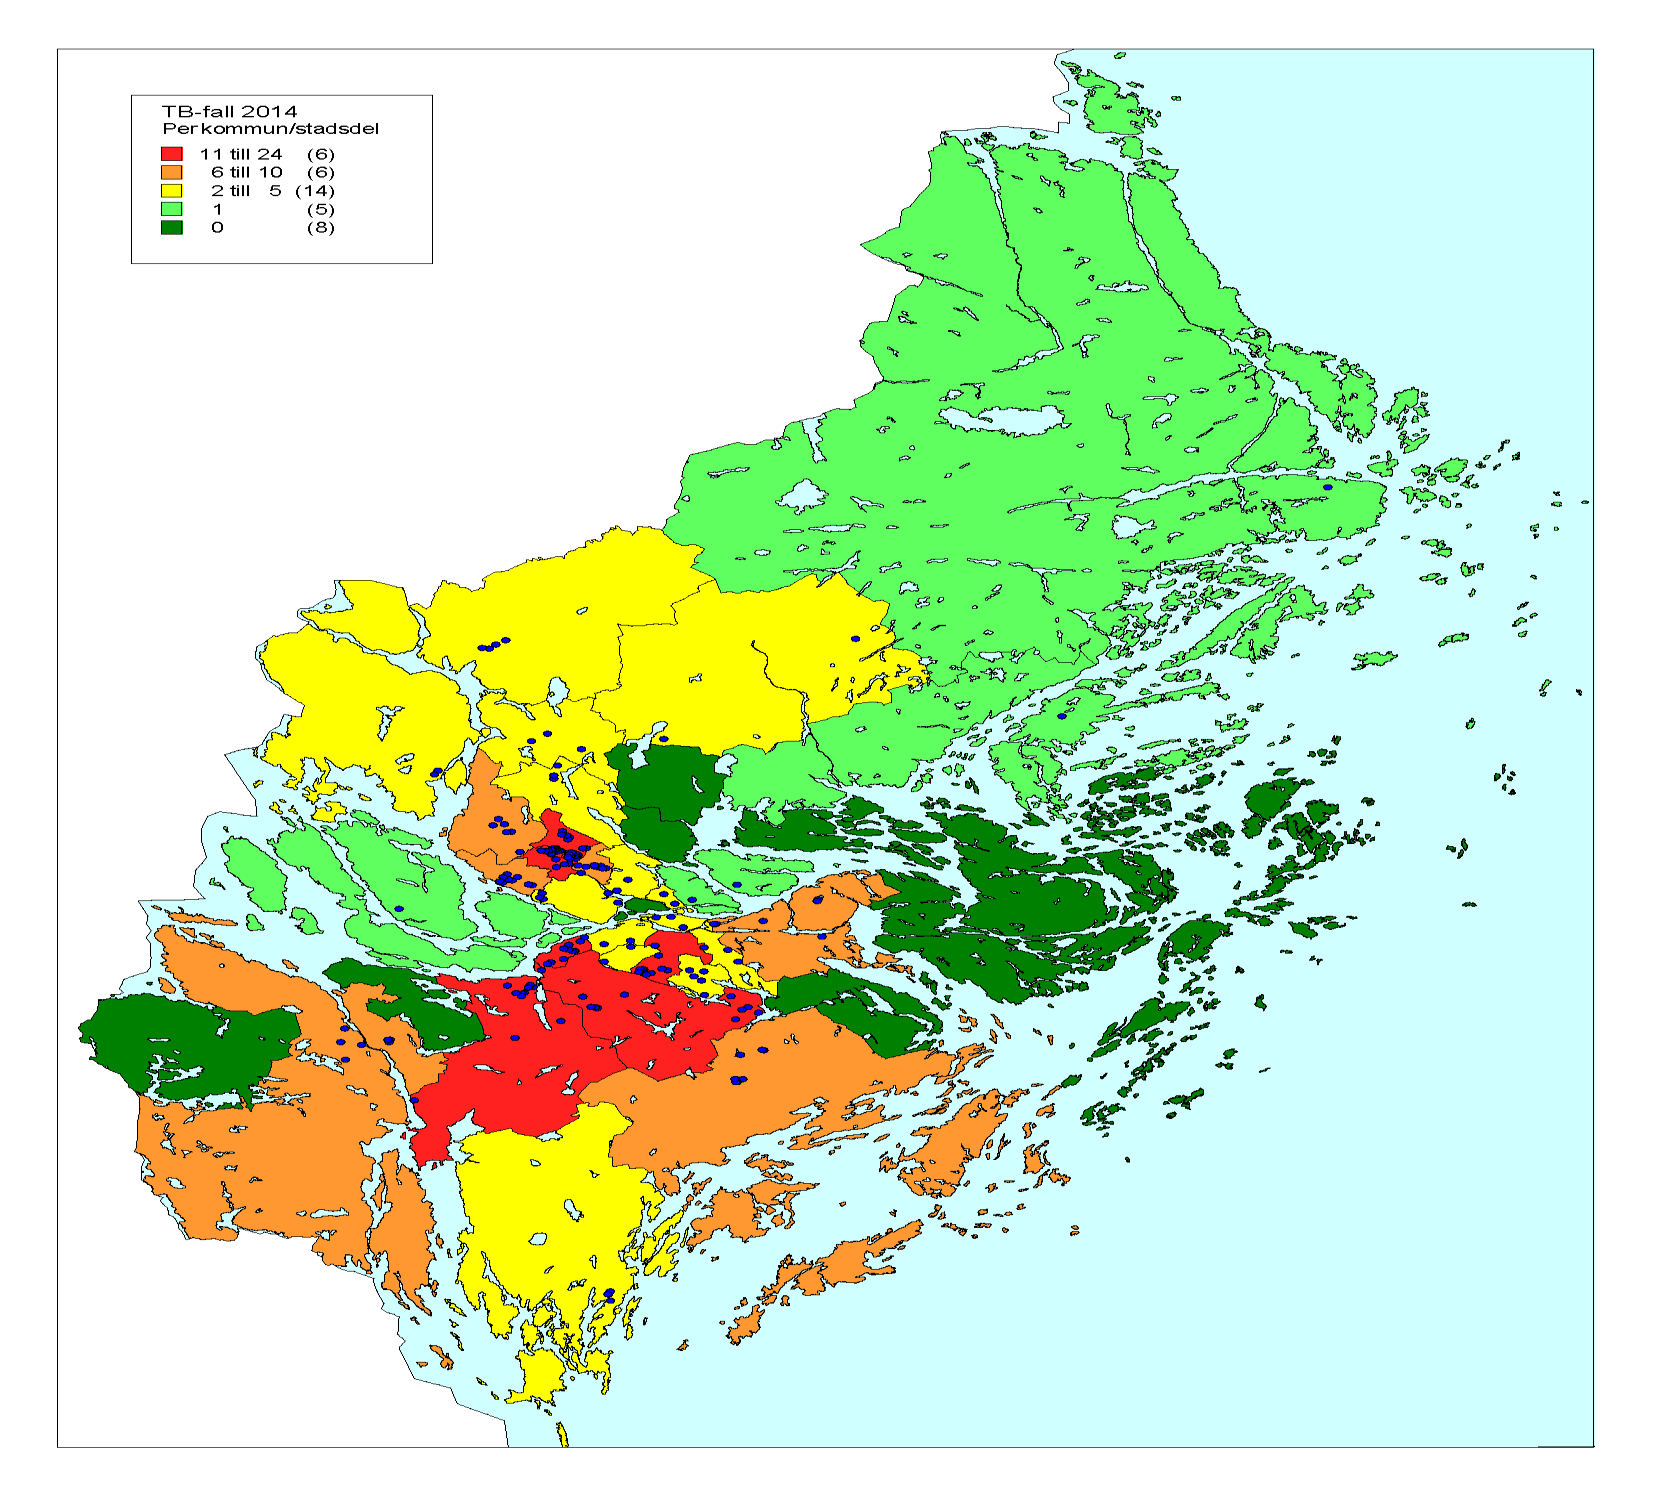 Kommuner / Stadsdel med högst prevalens av tuberkulos 2014 (röda)